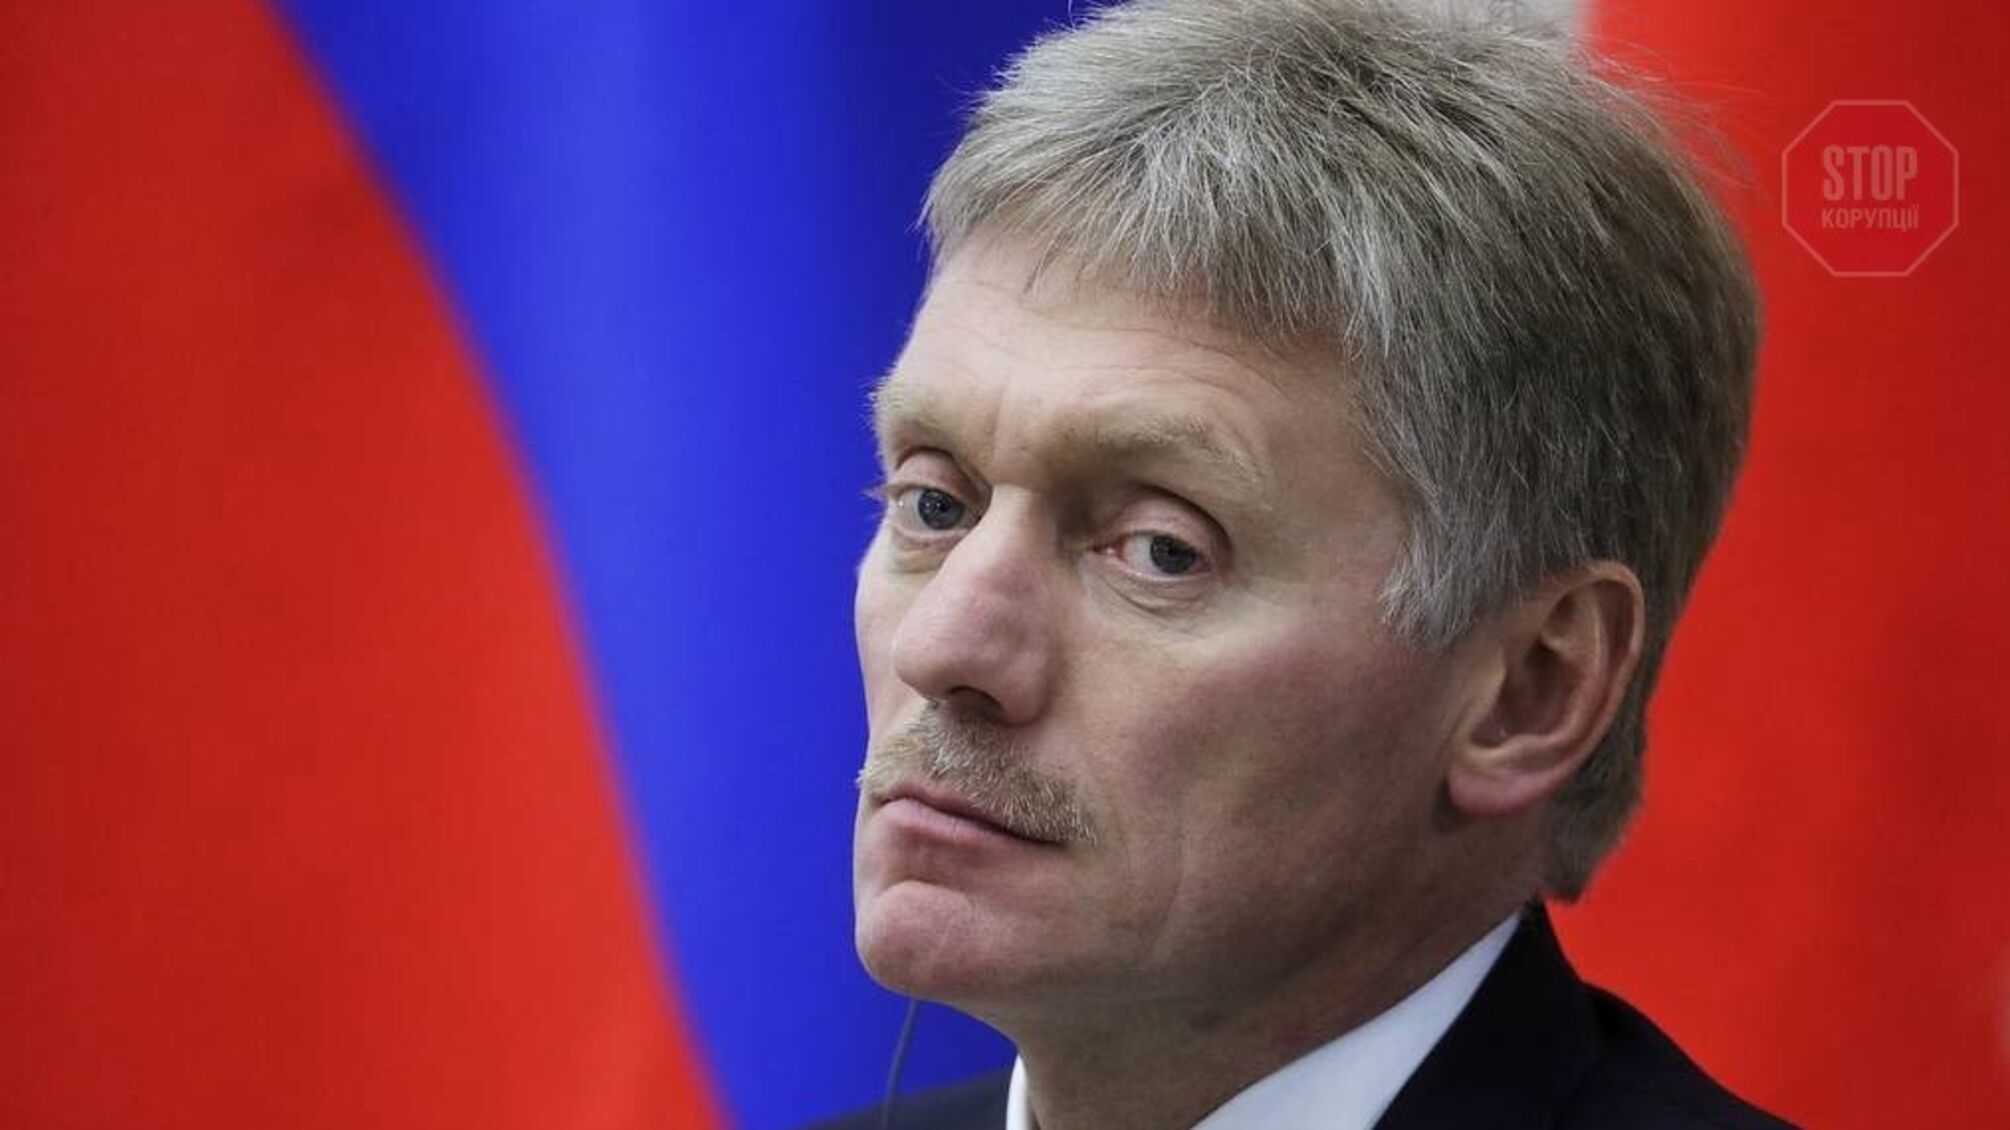 Мы не собираемся вмешиваться, - пресс-секретарь президента России Песков о подозрении Медведчуку